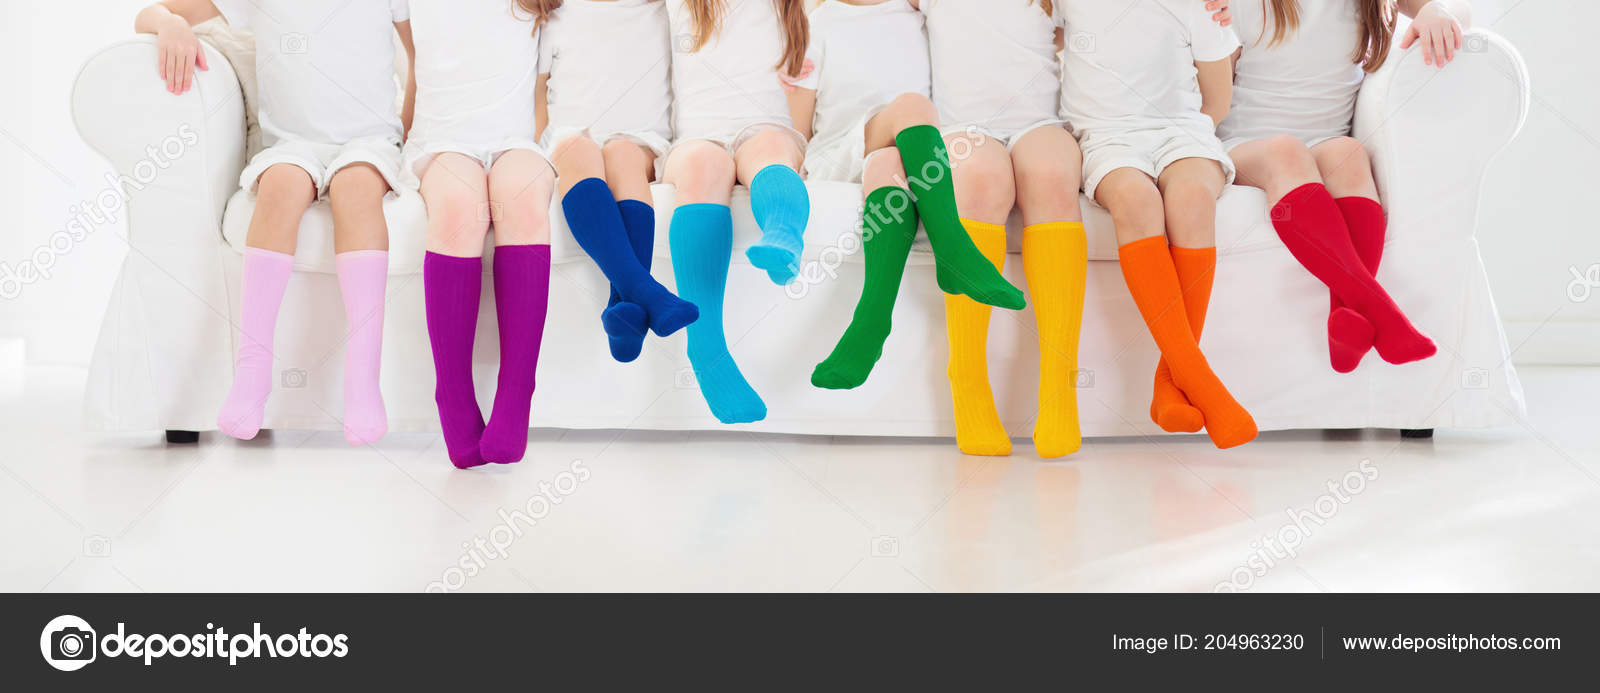 Girls in socks